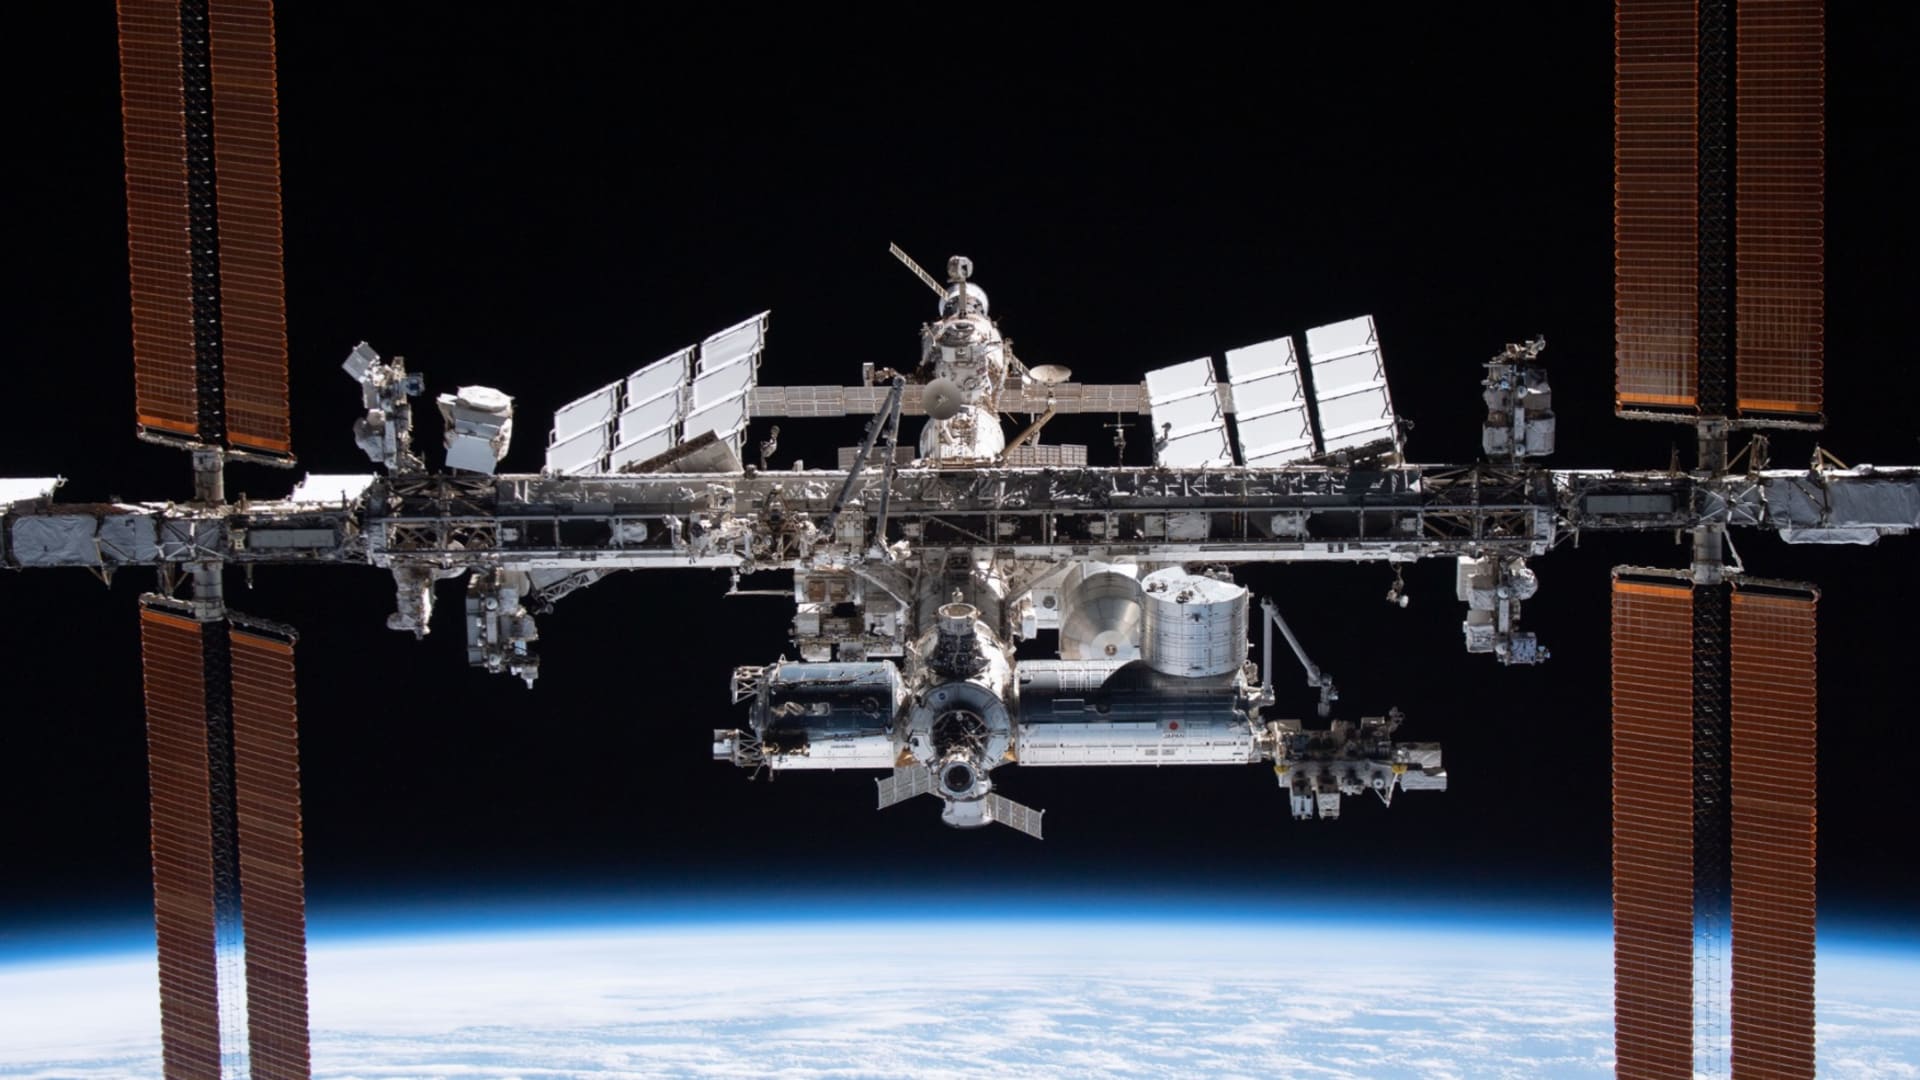 محطة الفضاء الدولية لن تبدو كقذيفة مدفع بل شظايا عند وصولها "نقطة نيمو" النائية على الأرض